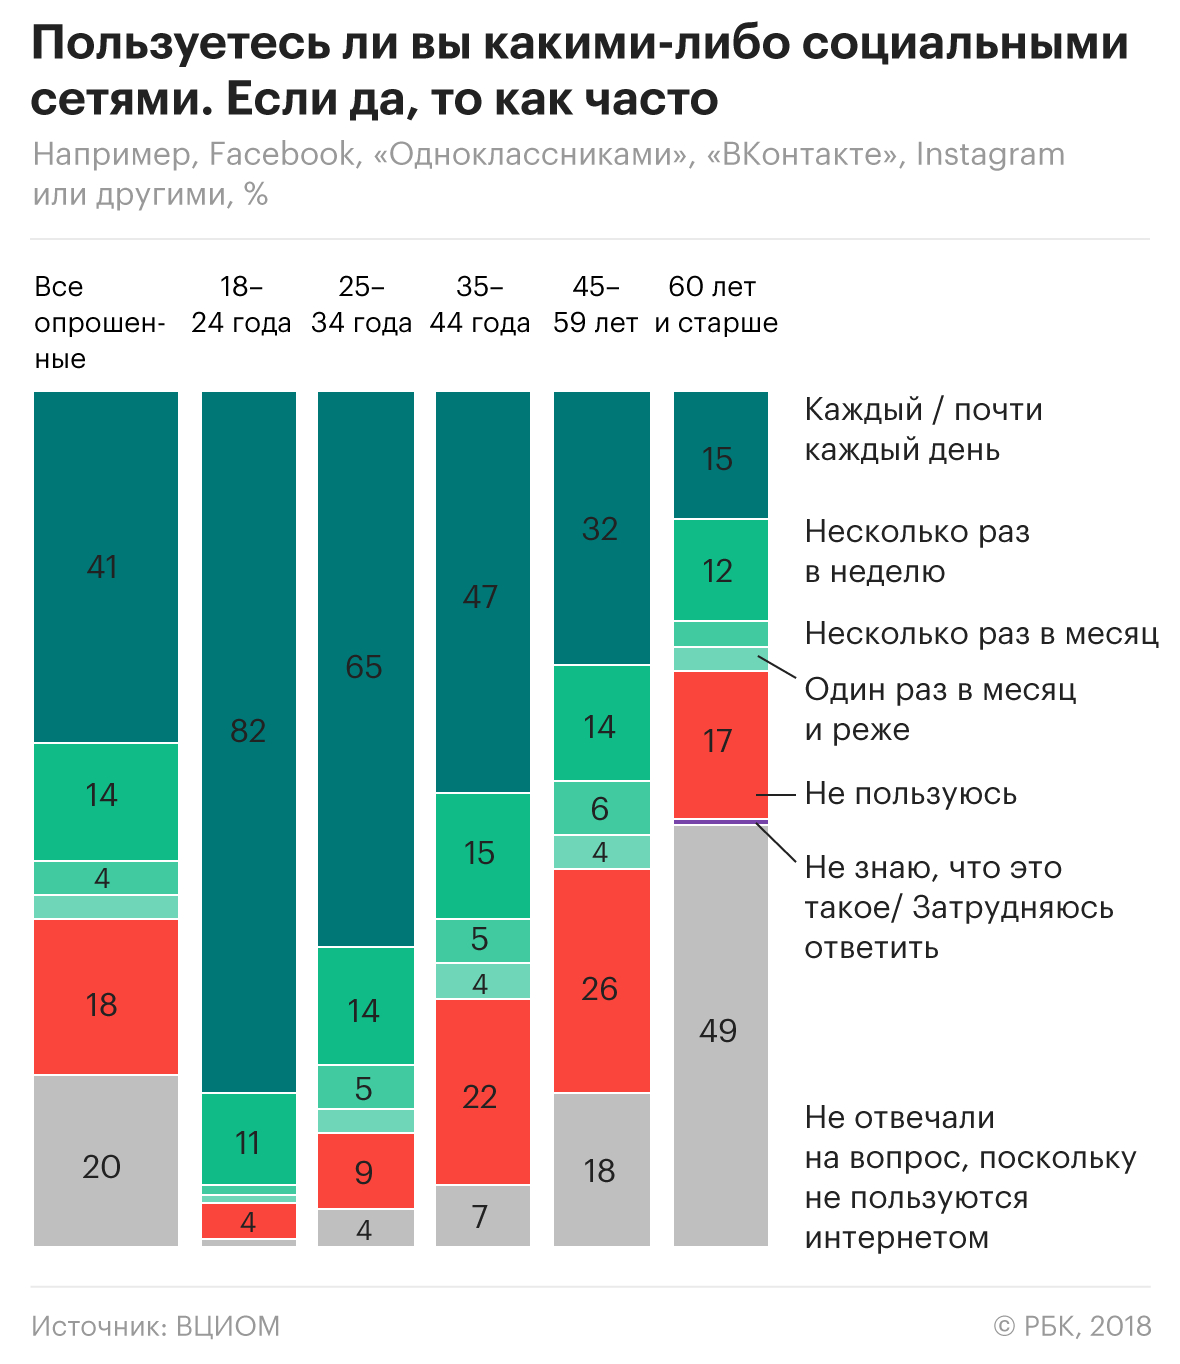 Цифровая угроза: что думают россияне об утечке личных данных в соцсетях